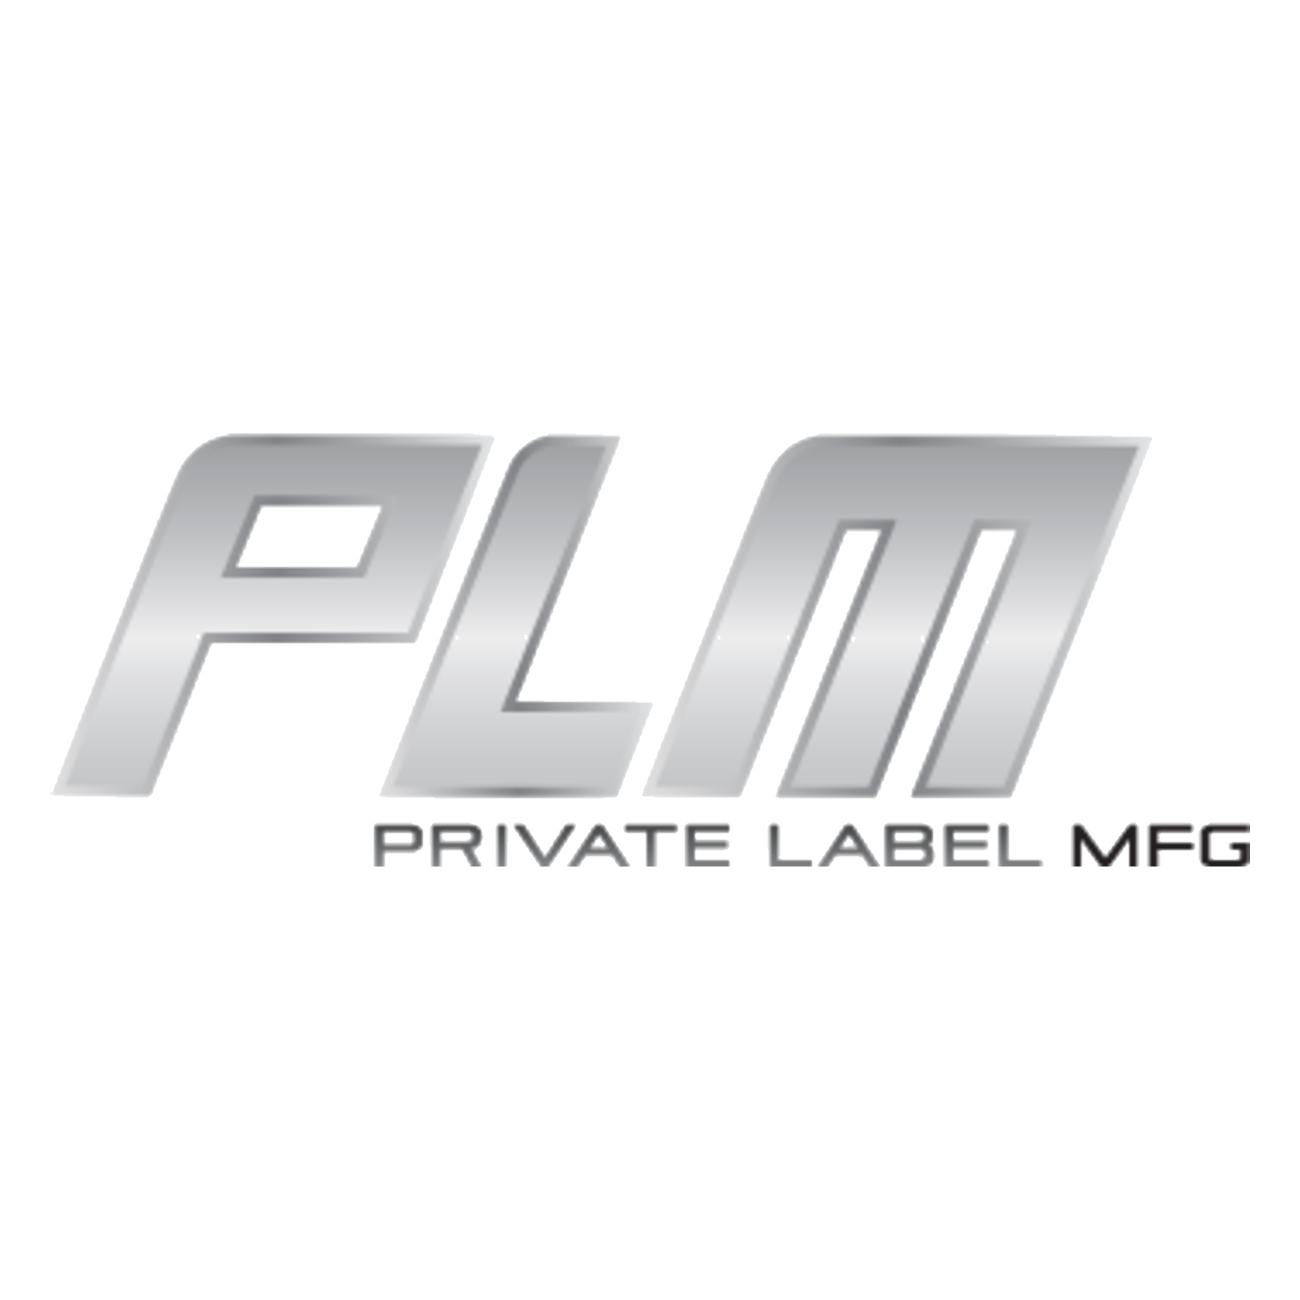 Private Label MFG